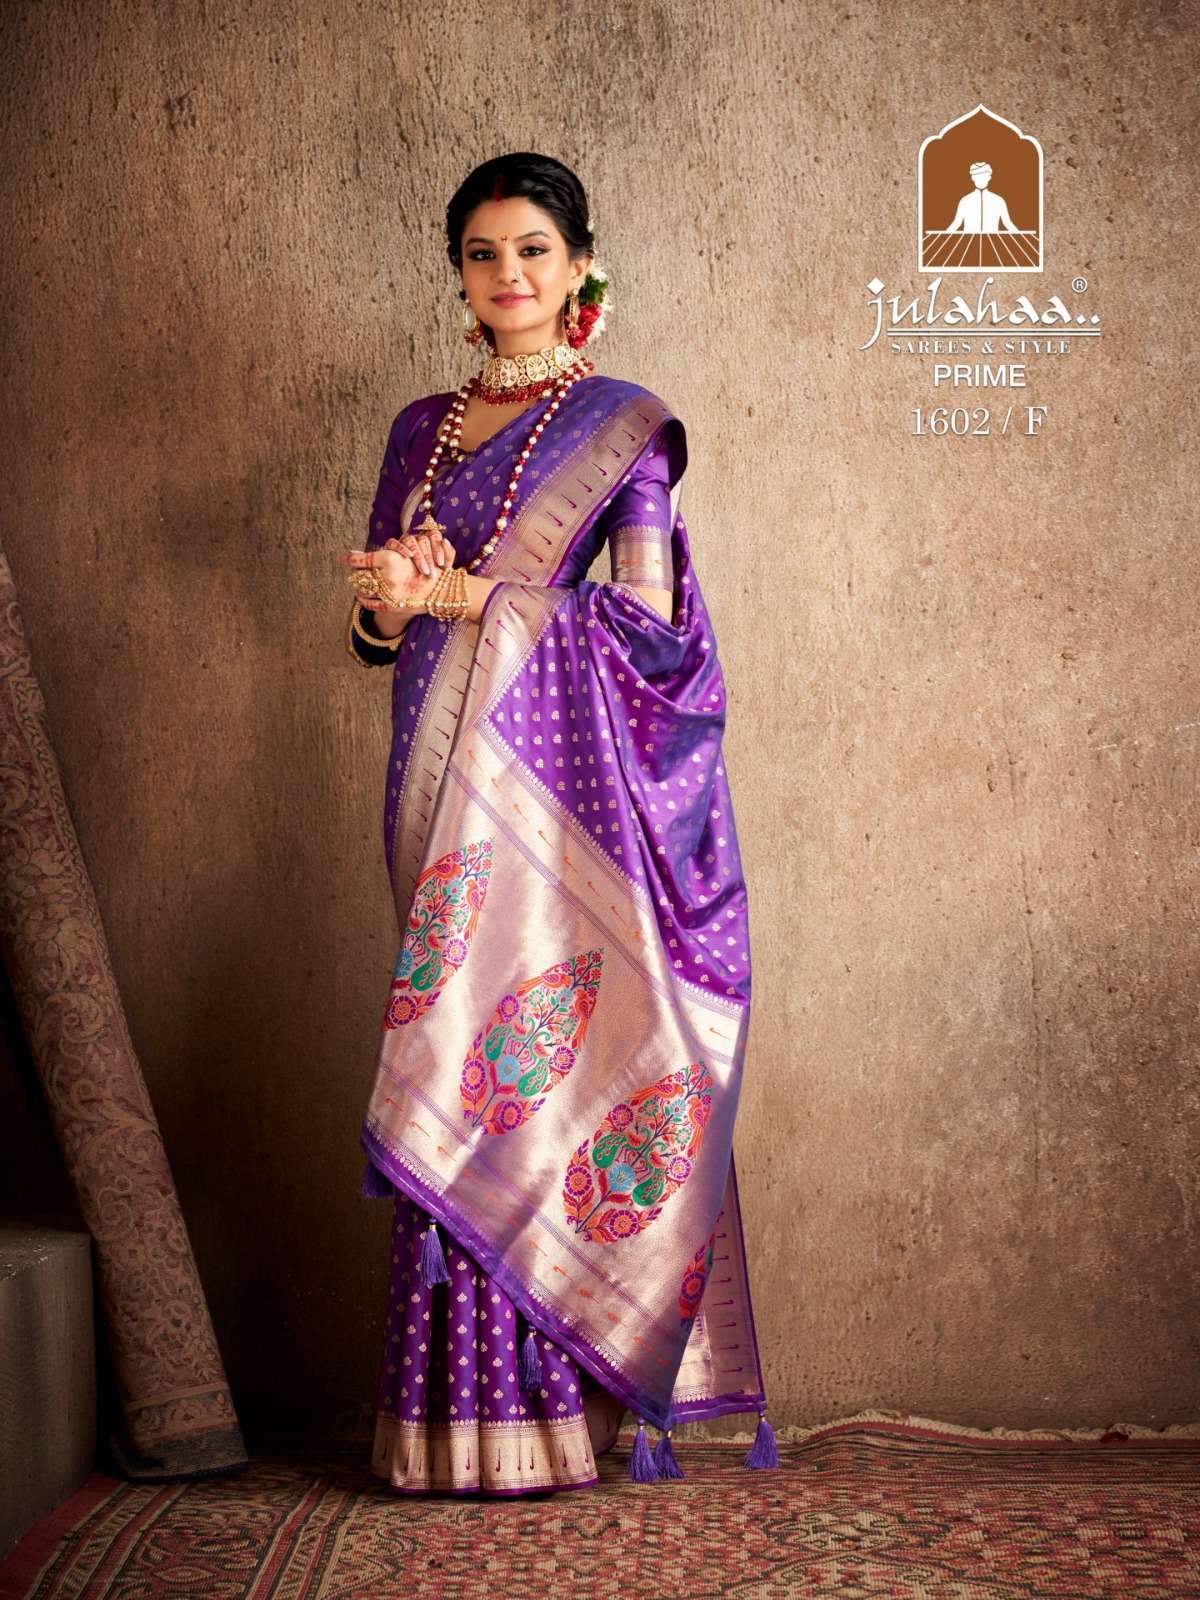 julahaa sarees 1602 designs fantastic silk paithani saree collection 